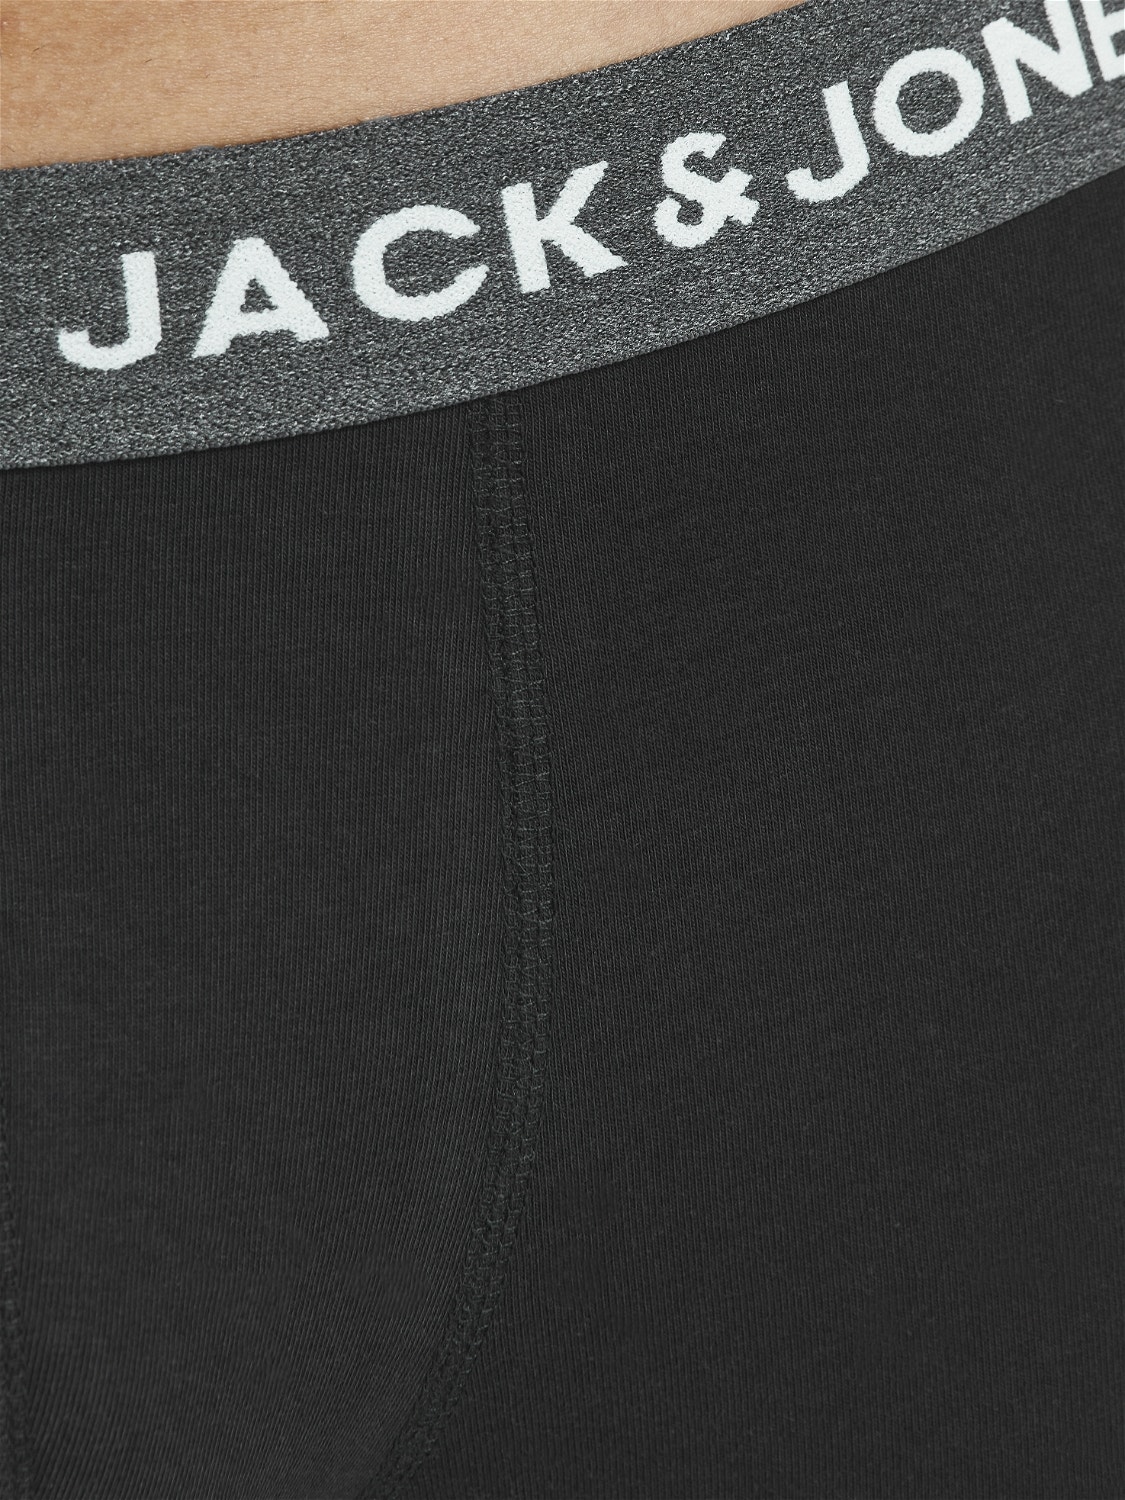 Jack & Jones 5-pack Boxershorts -Dark Grey Melange - 12142342